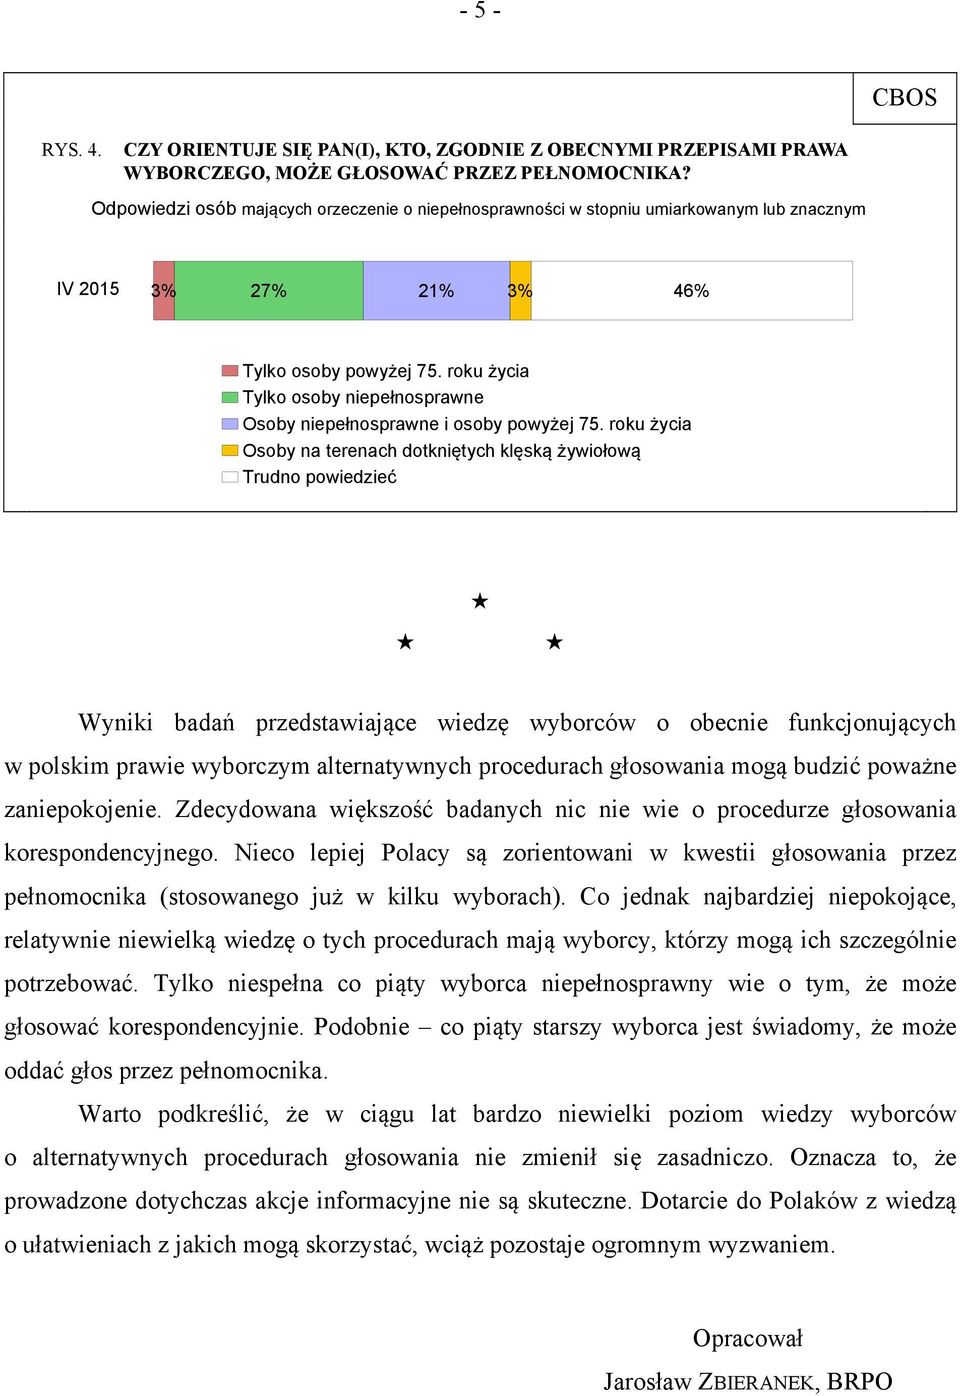 roku życia Osoby na terenach dotkniętych klęską żywiołową Wyniki badań przedstawiające wiedzę wyborców o obecnie funkcjonujących w polskim prawie wyborczym alternatywnych procedurach głosowania mogą